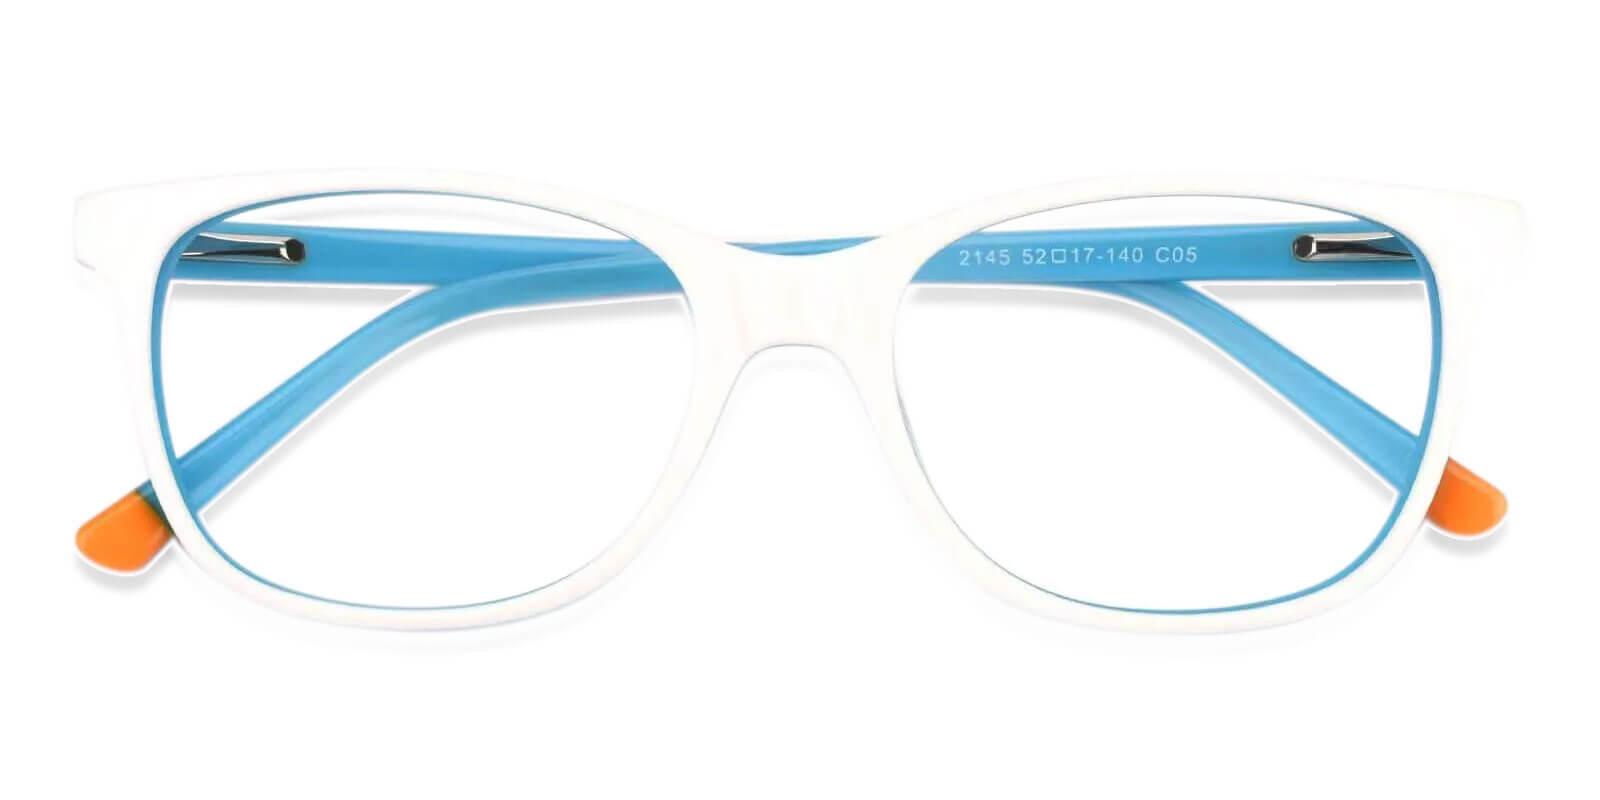 Hibbard White Acetate Eyeglasses , SpringHinges , UniversalBridgeFit Frames from ABBE Glasses